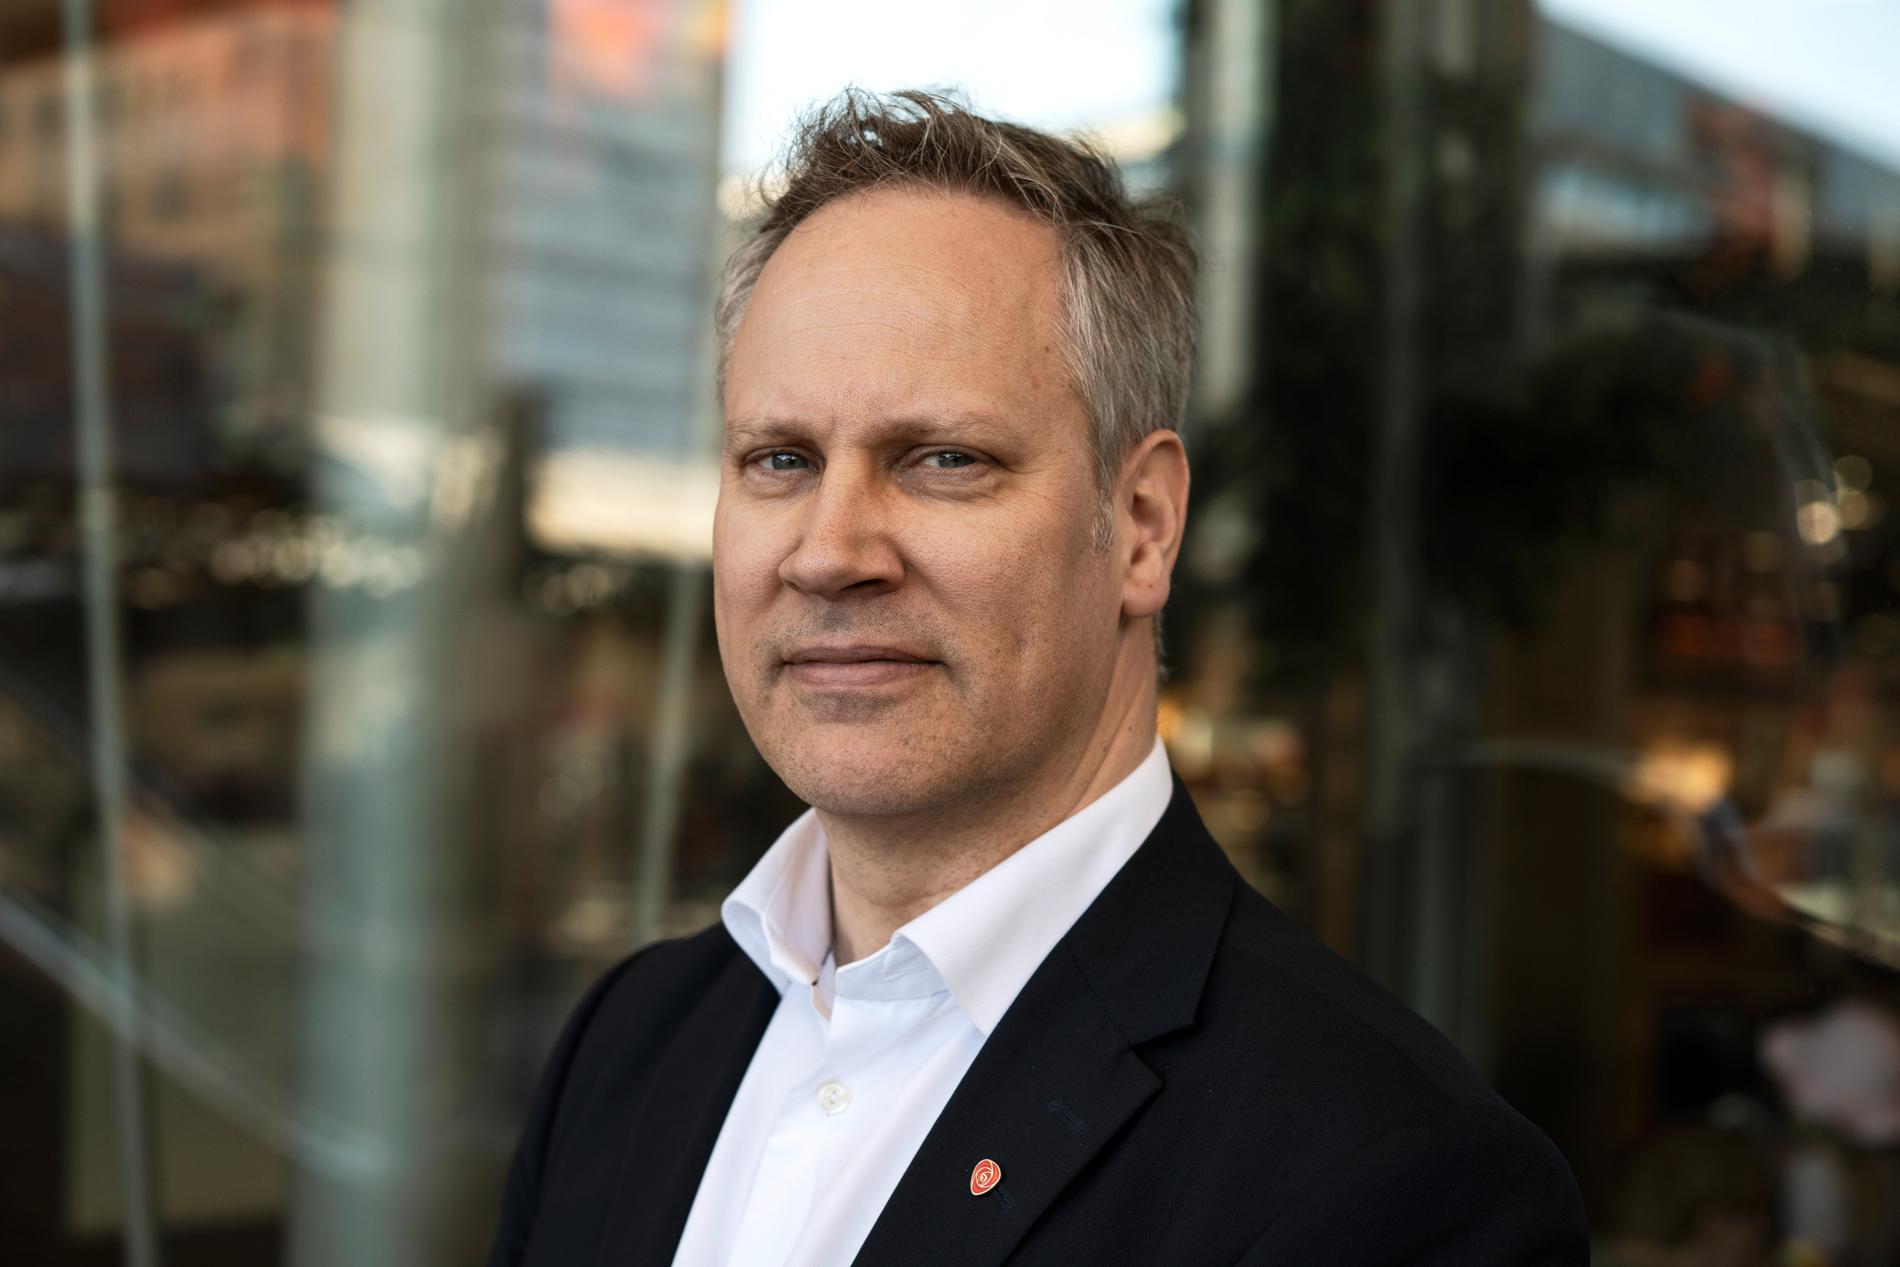 El ministro de Transportes y Comunicaciones, Jon-Ivar Nygård (Partido Laborista), dice que lo mejor es que la industria misma encuentre una solución, pero cree que se necesita la acción del gobierno para obtener una solución de pago común.